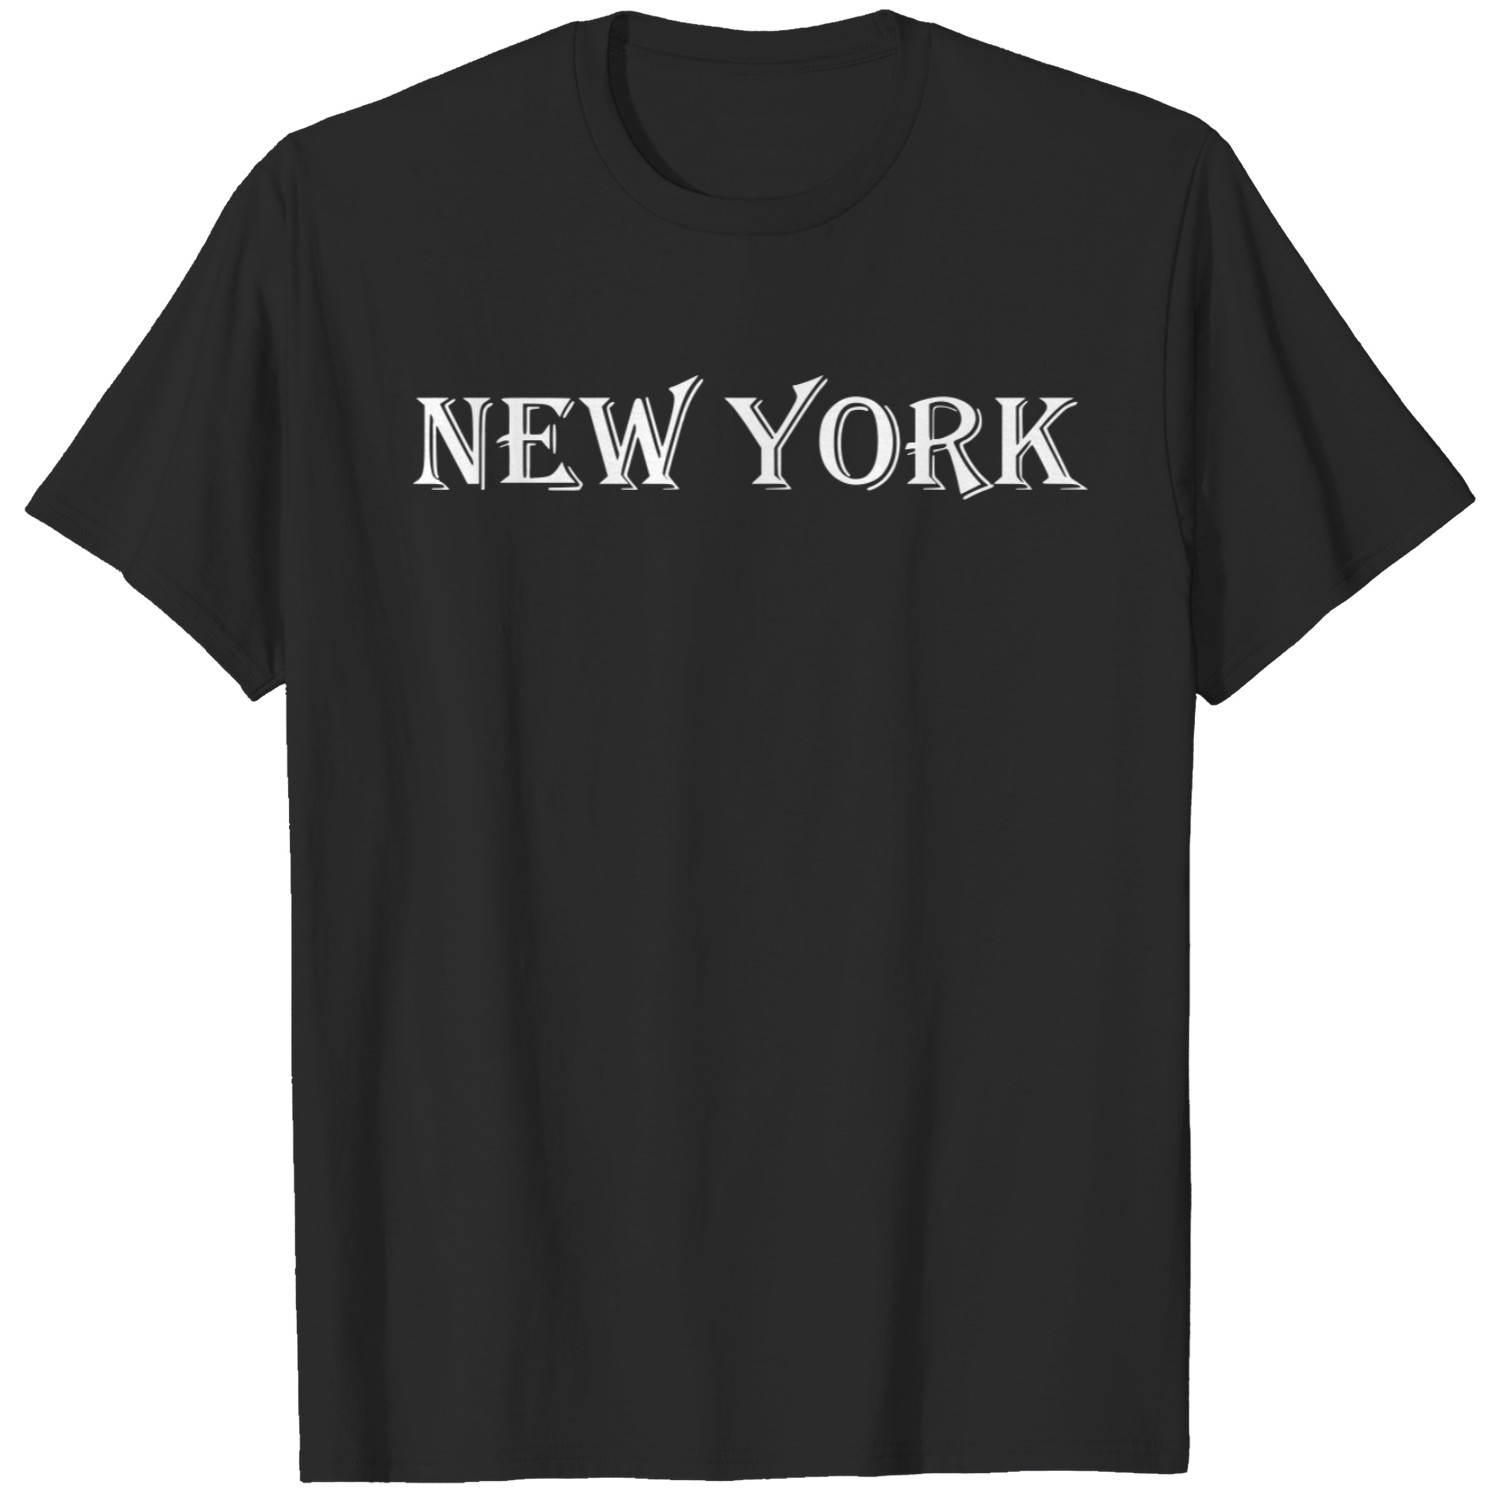 New York white gift present idea T-shirt